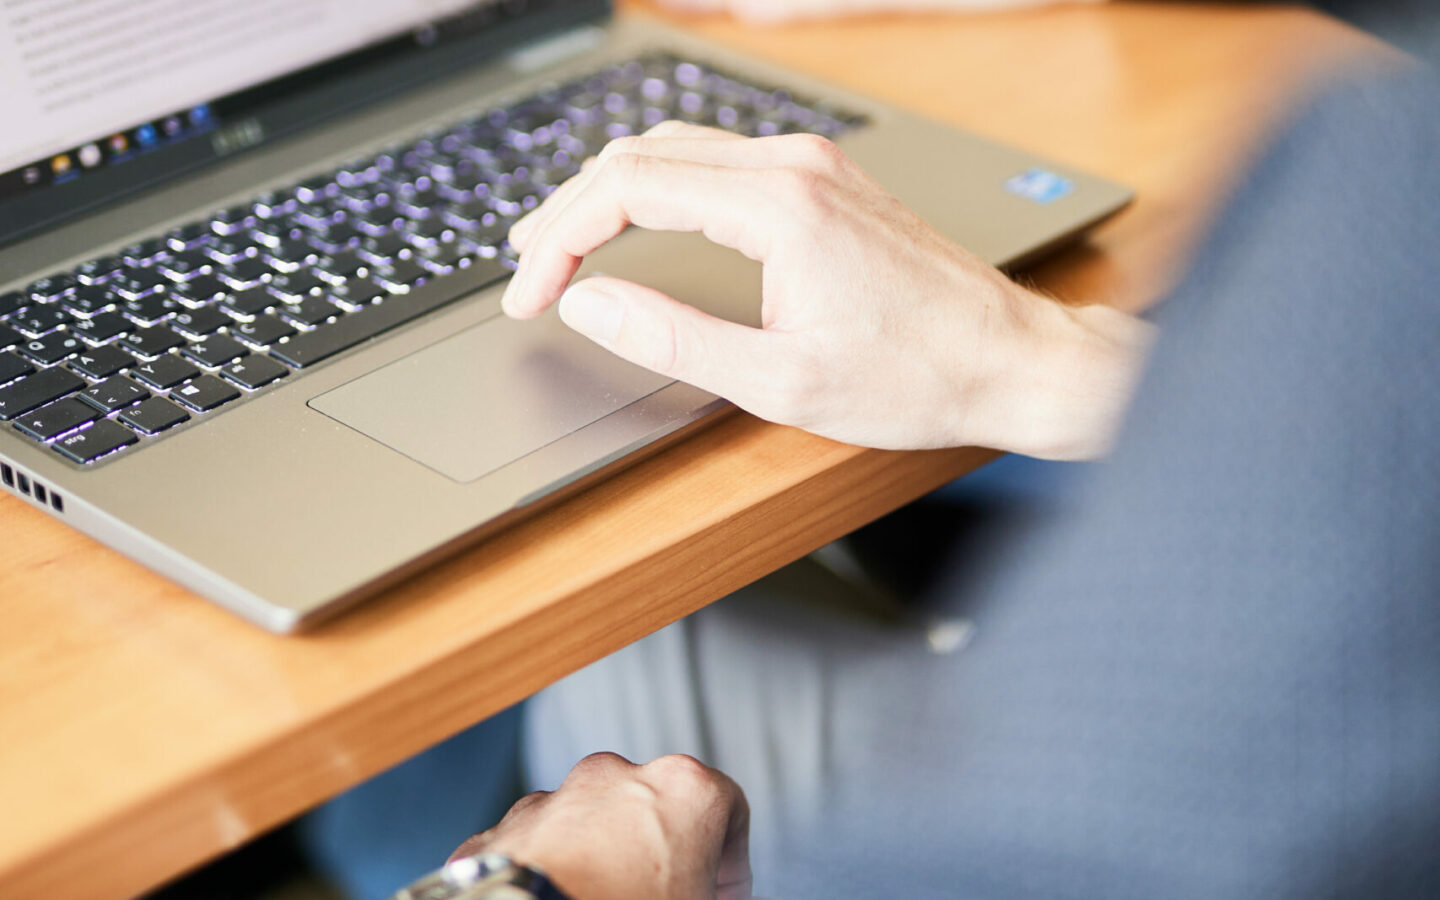 Bild von einem Laptop auf einem Konferenztisch. Auf der Tastatur liegt eine Hand.